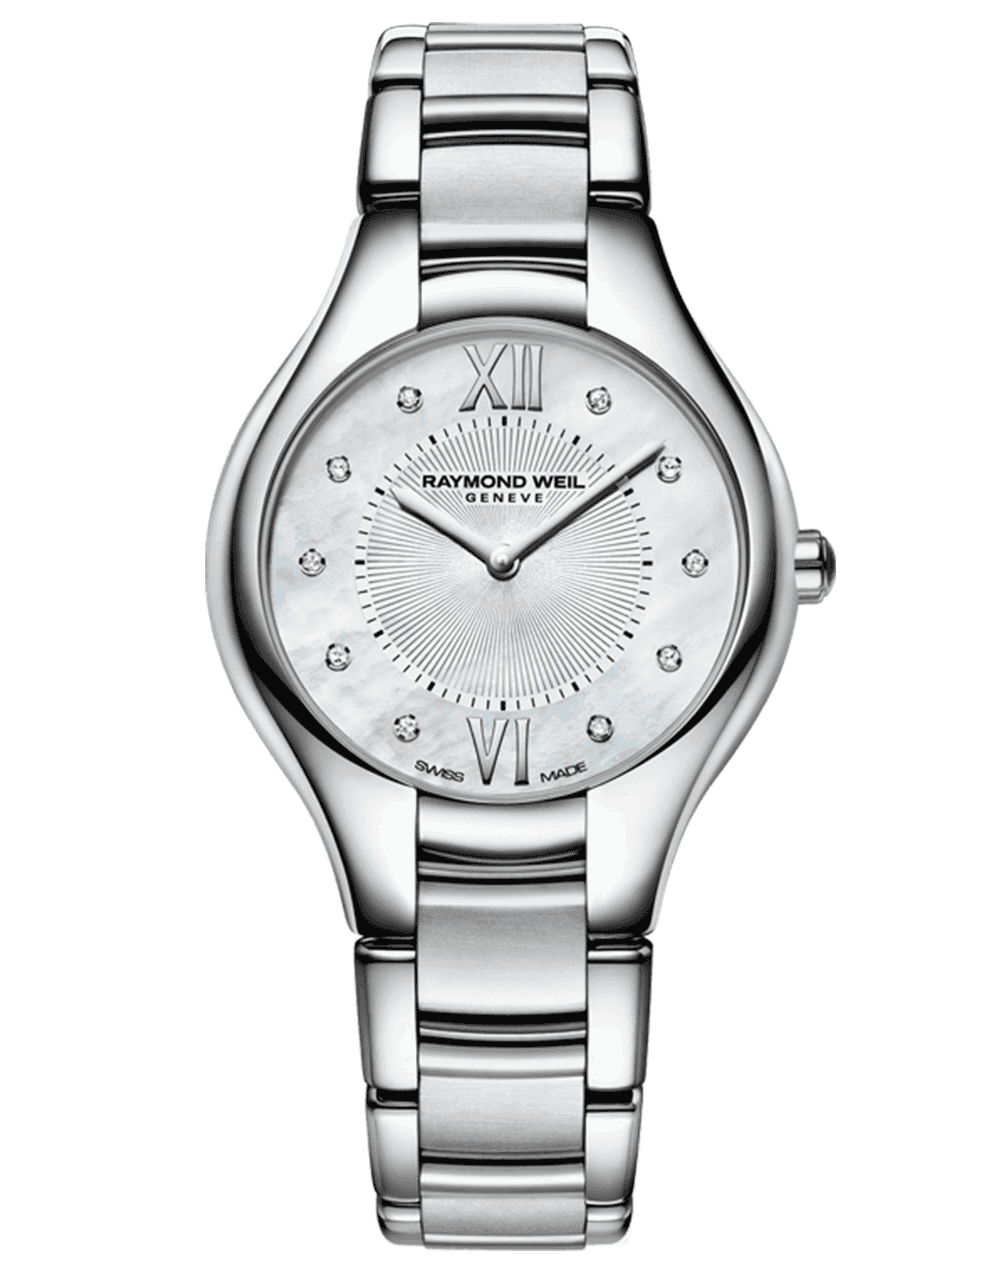 Replica Rolex Watches Information